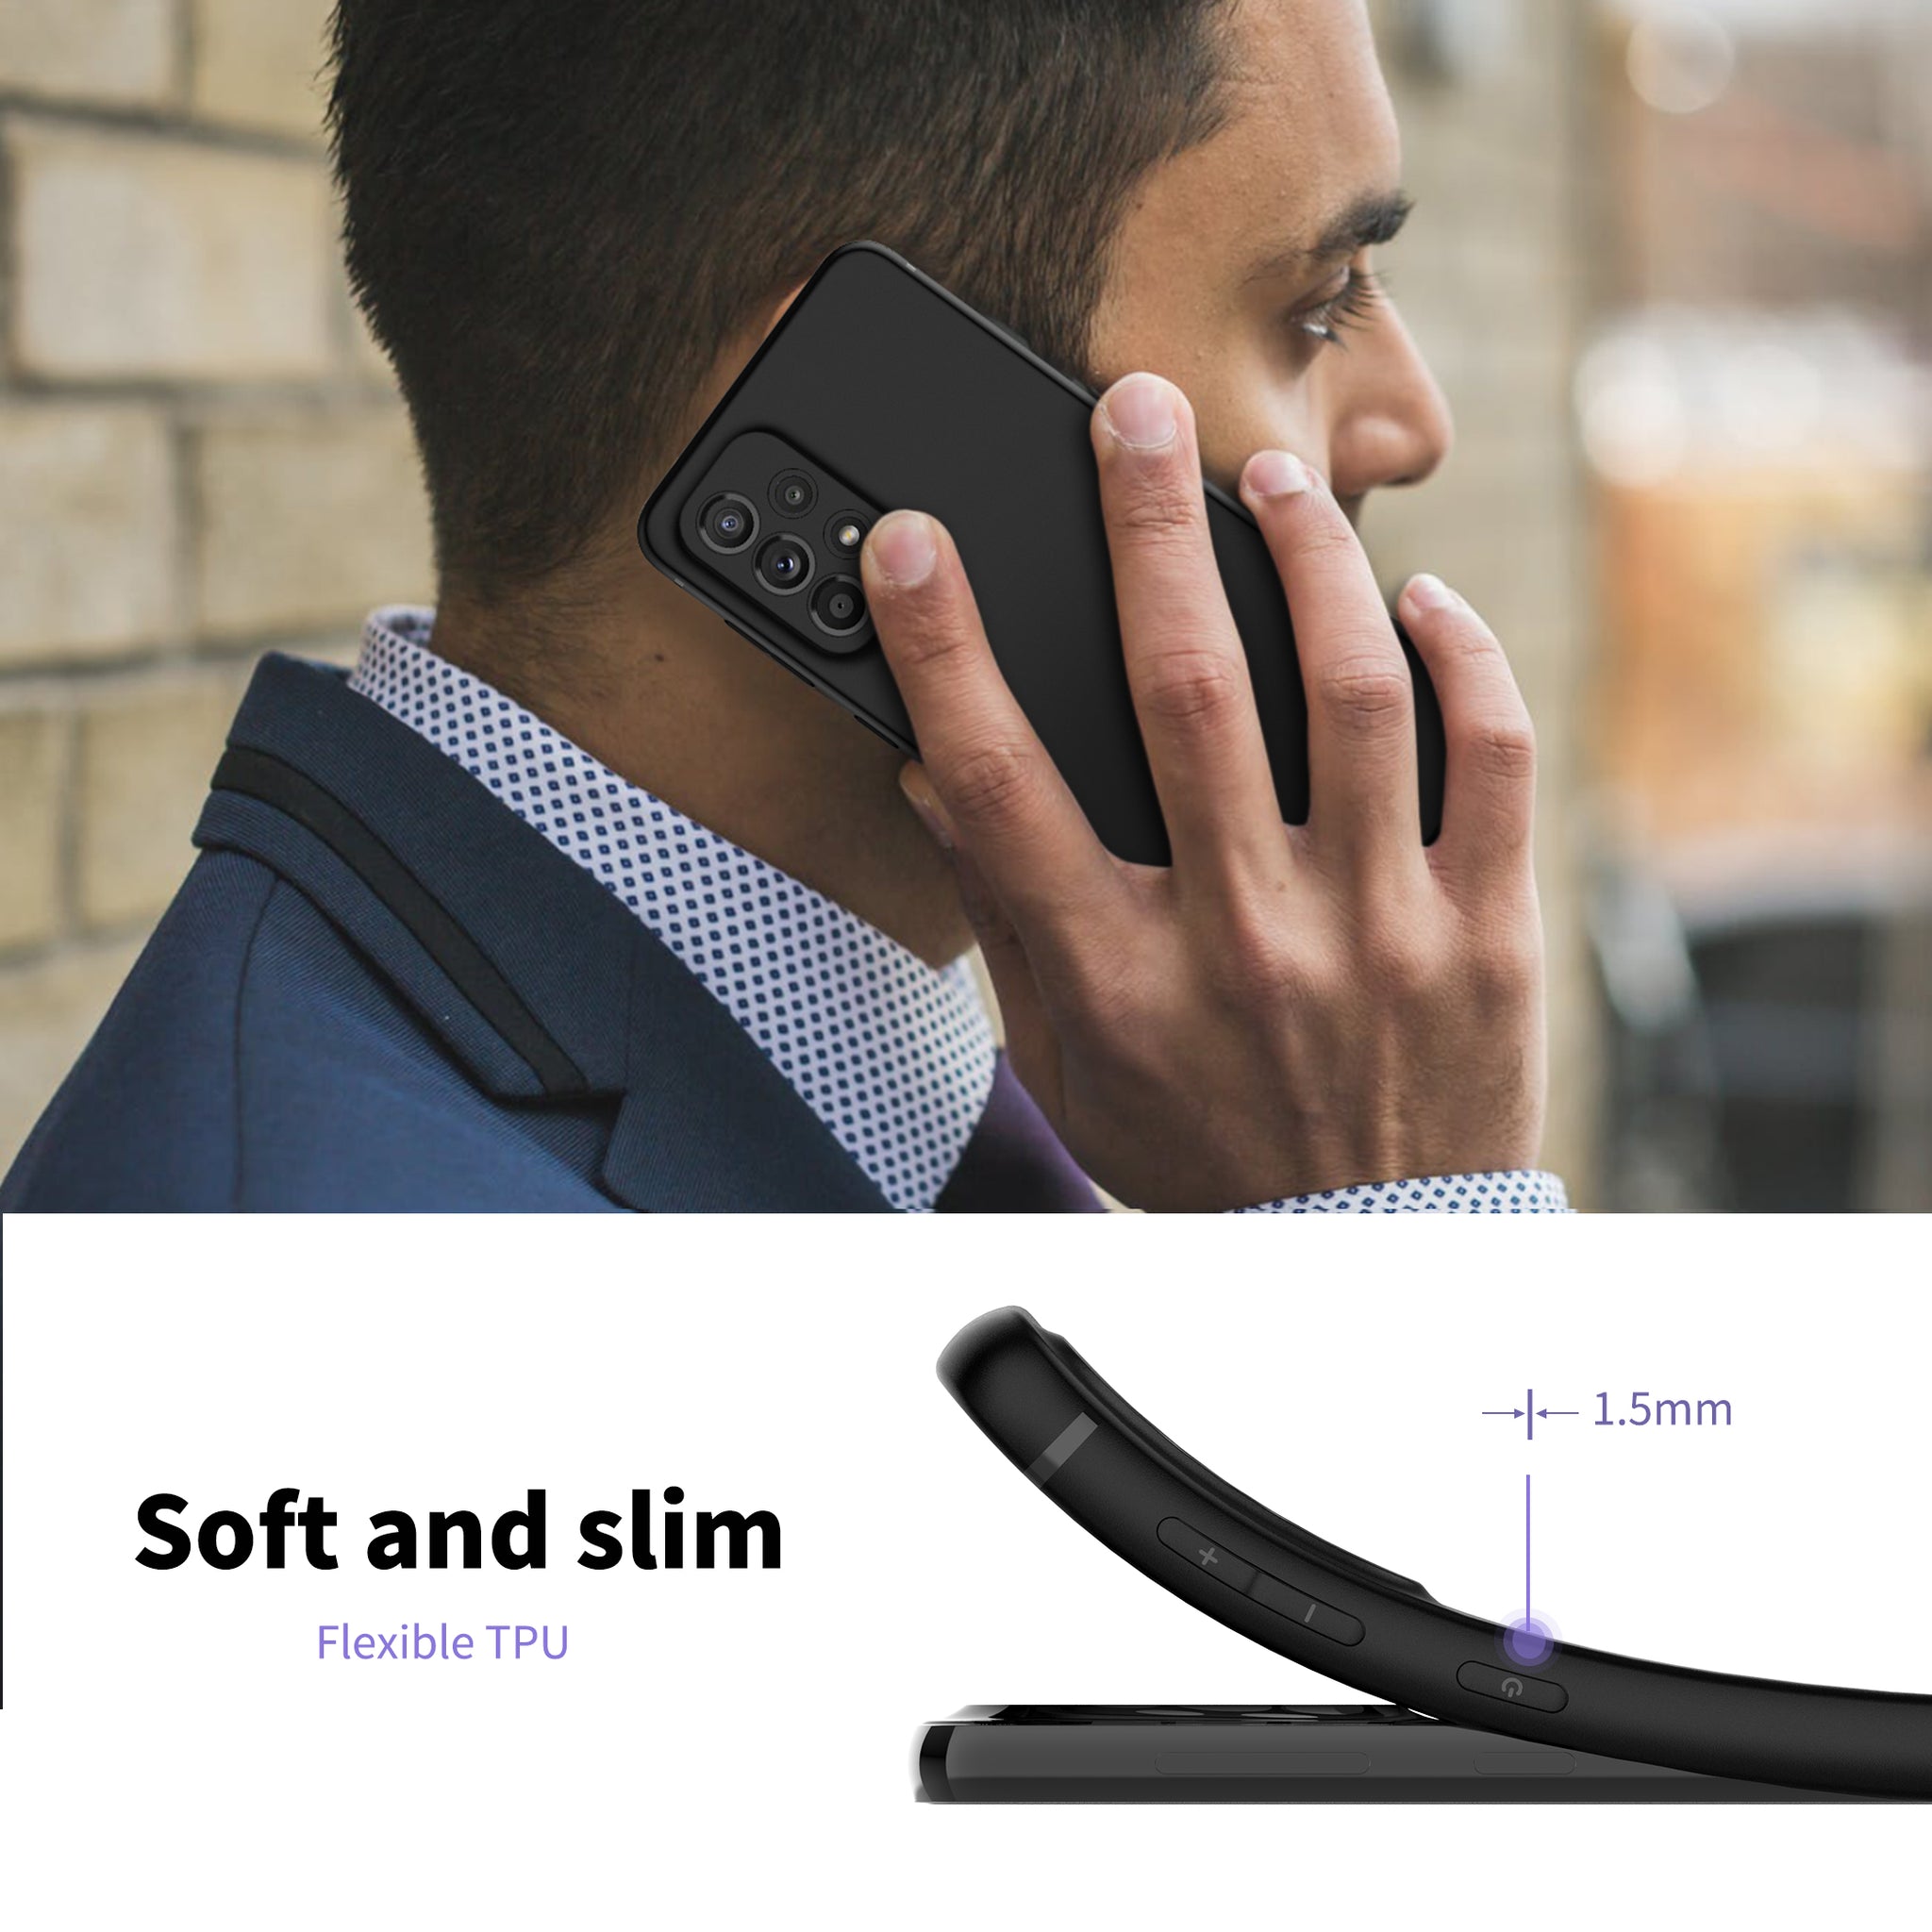 CACOE Slim Case for Samsung Galaxy A33 5G